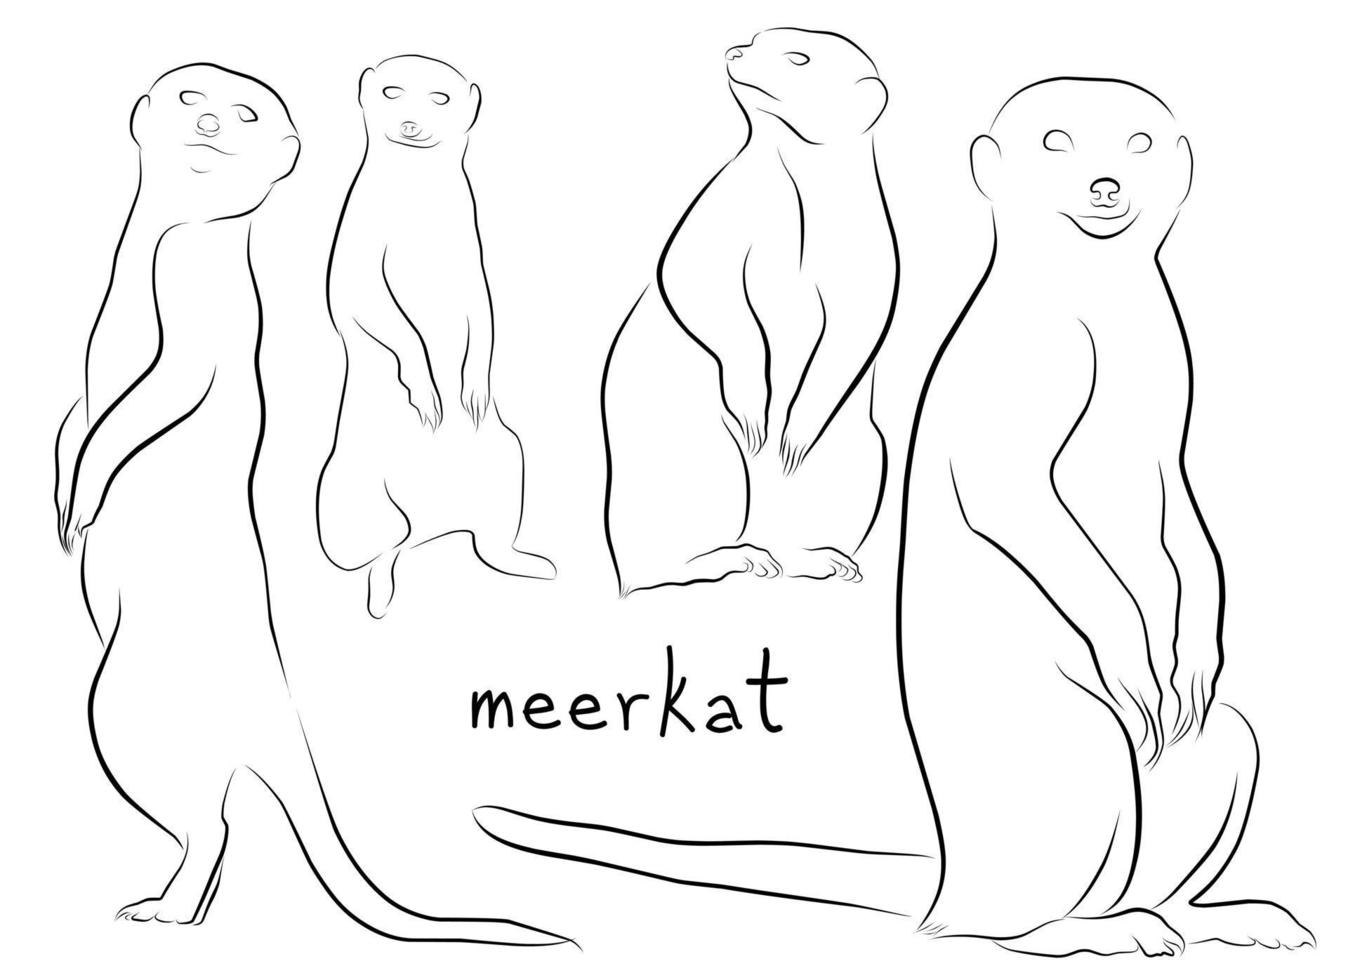 meerkat uppsättning kontur illustration vektor